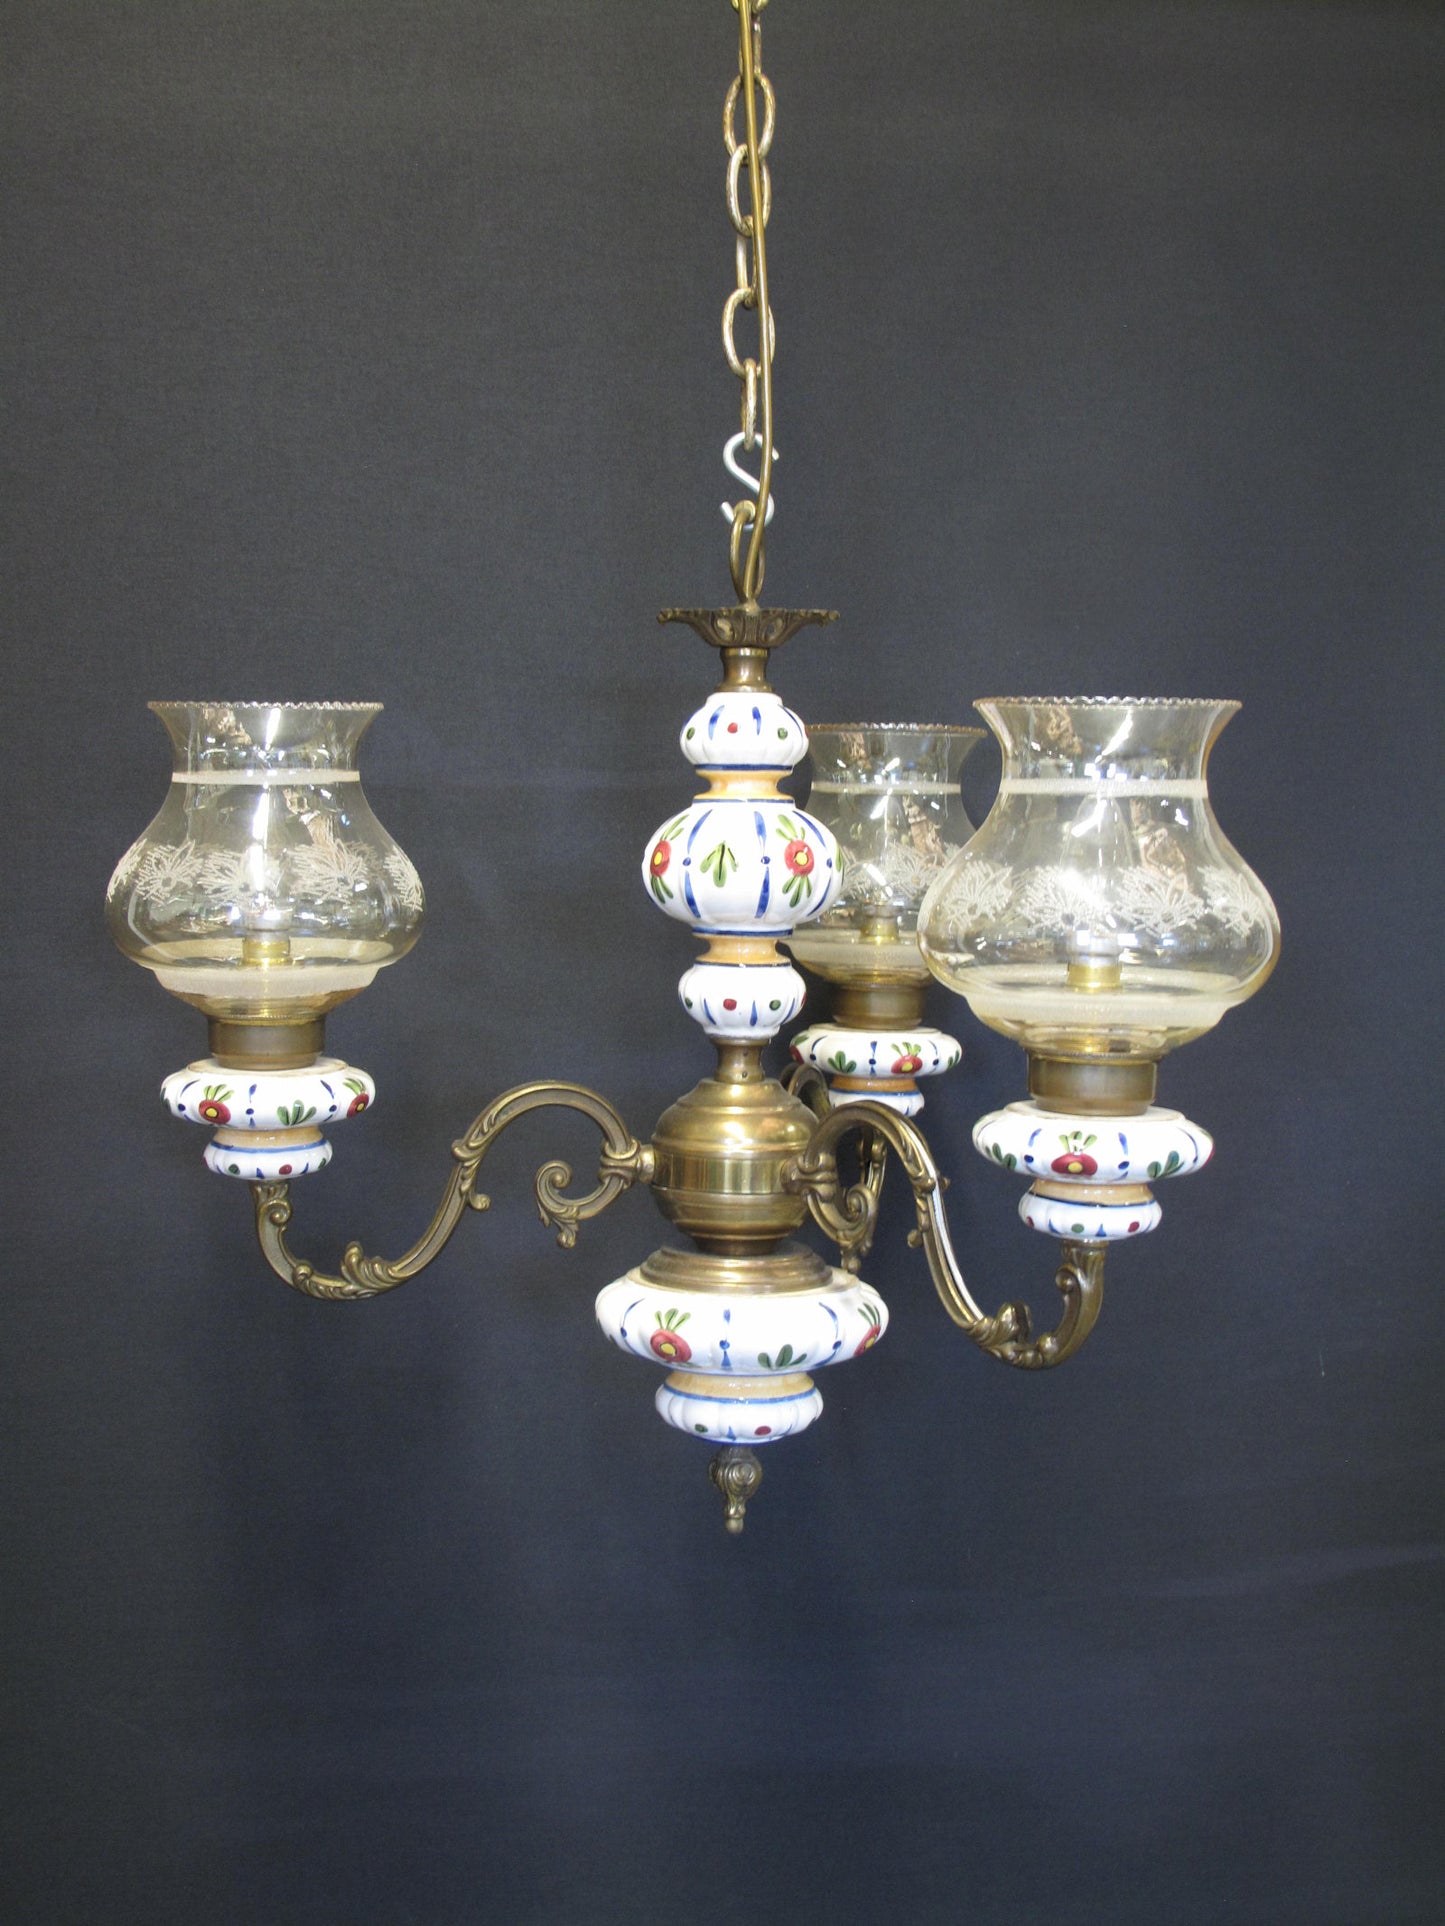 3 Arm brass & ceramic chandelier